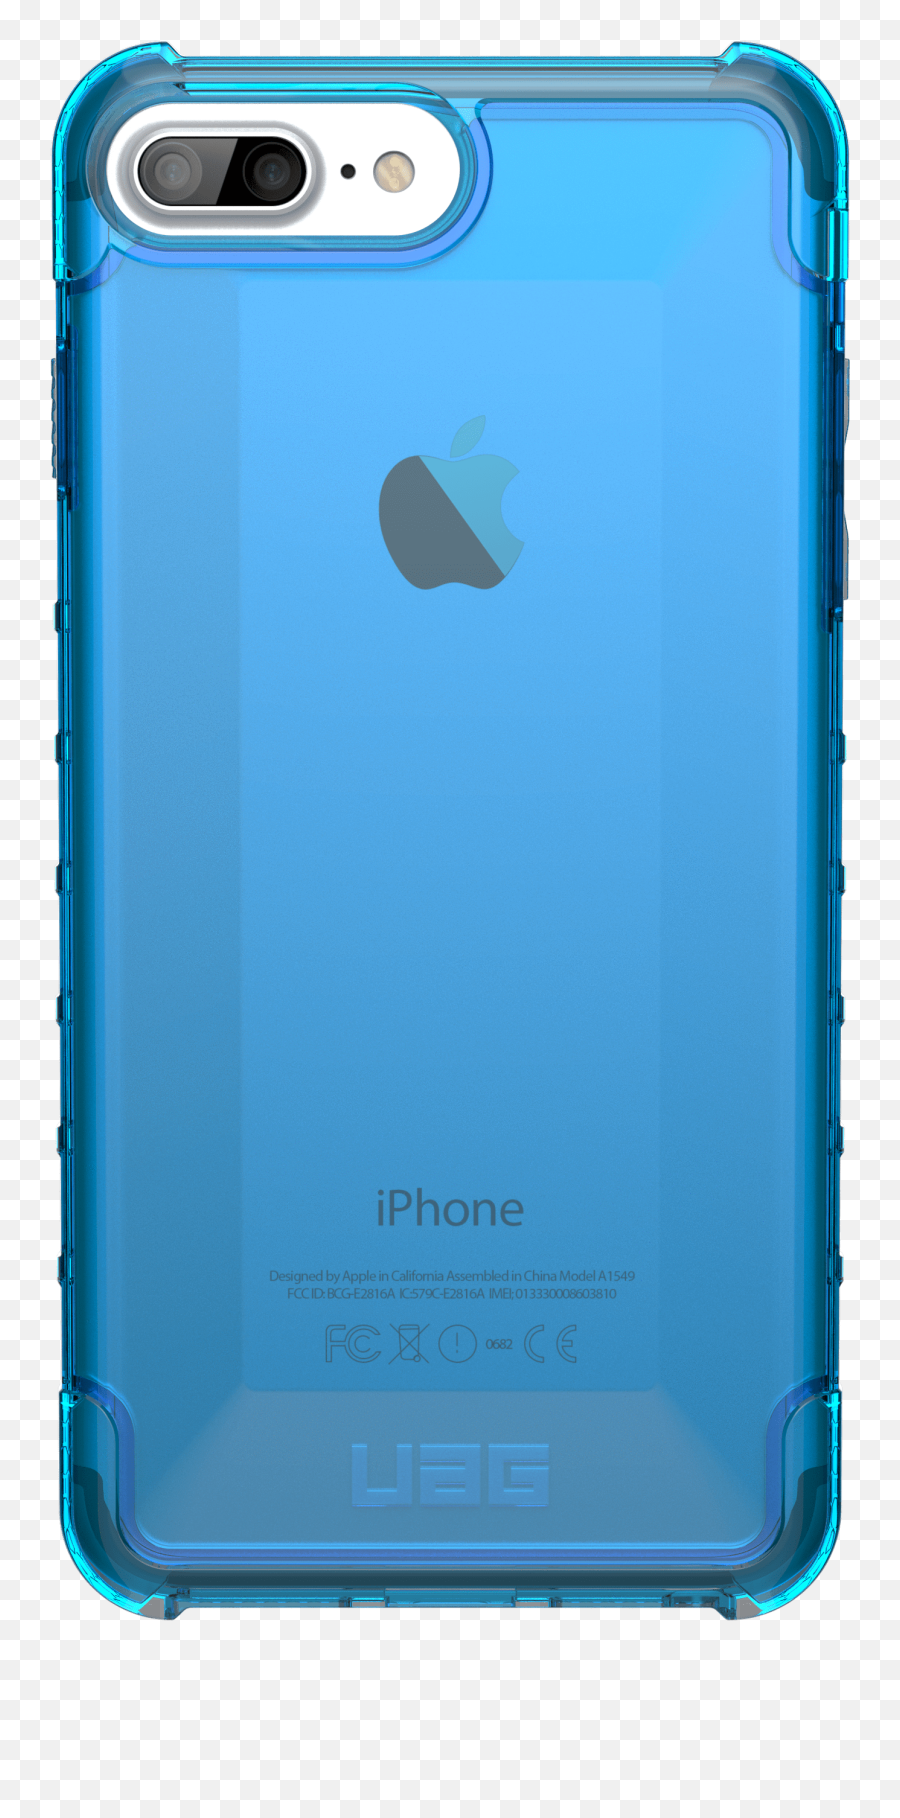 Uag Plyo - Mobile Phone Case Emoji,Transparent Iphone 6s Cases